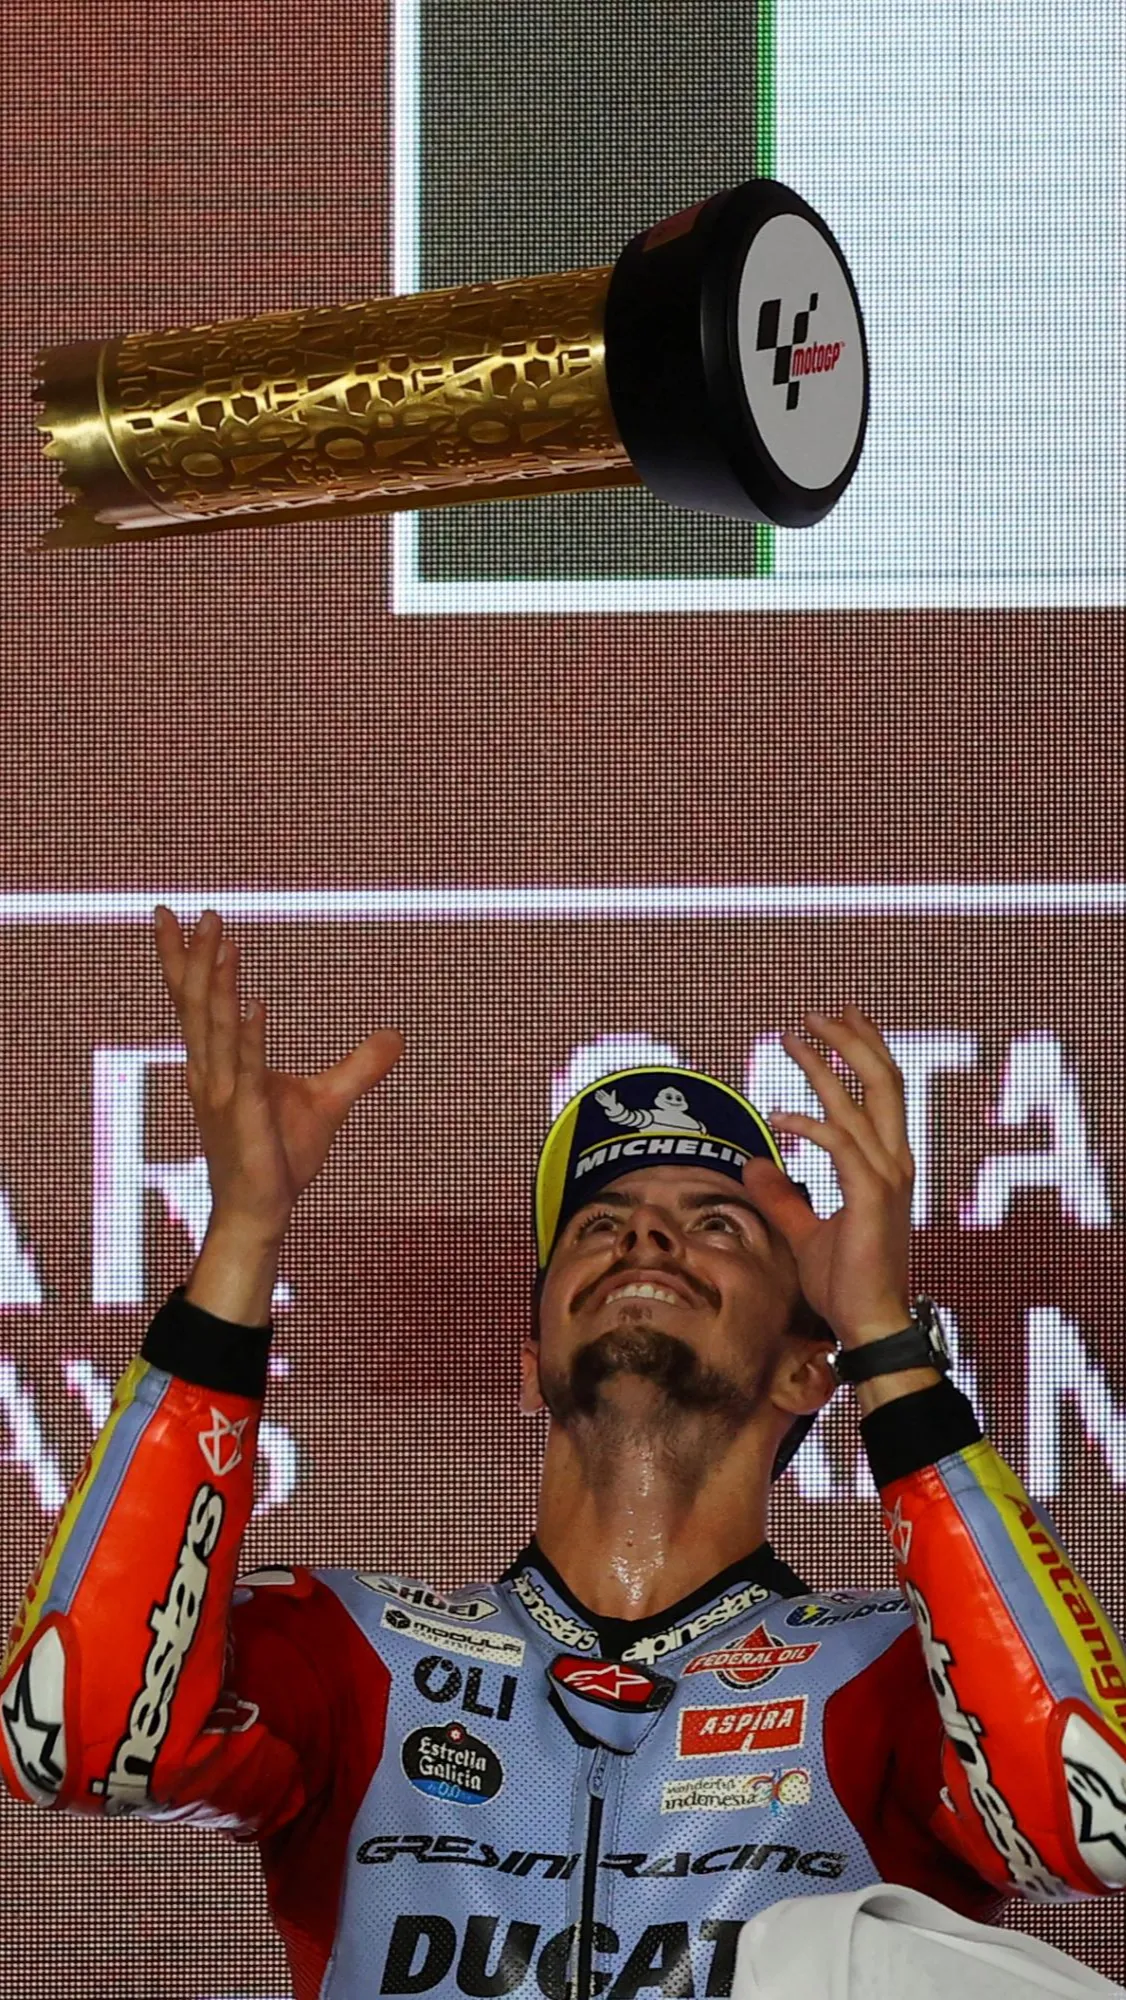 Fabio Di Giannantonio saat rayakan kemenangannya di podium pertama MotoGP.